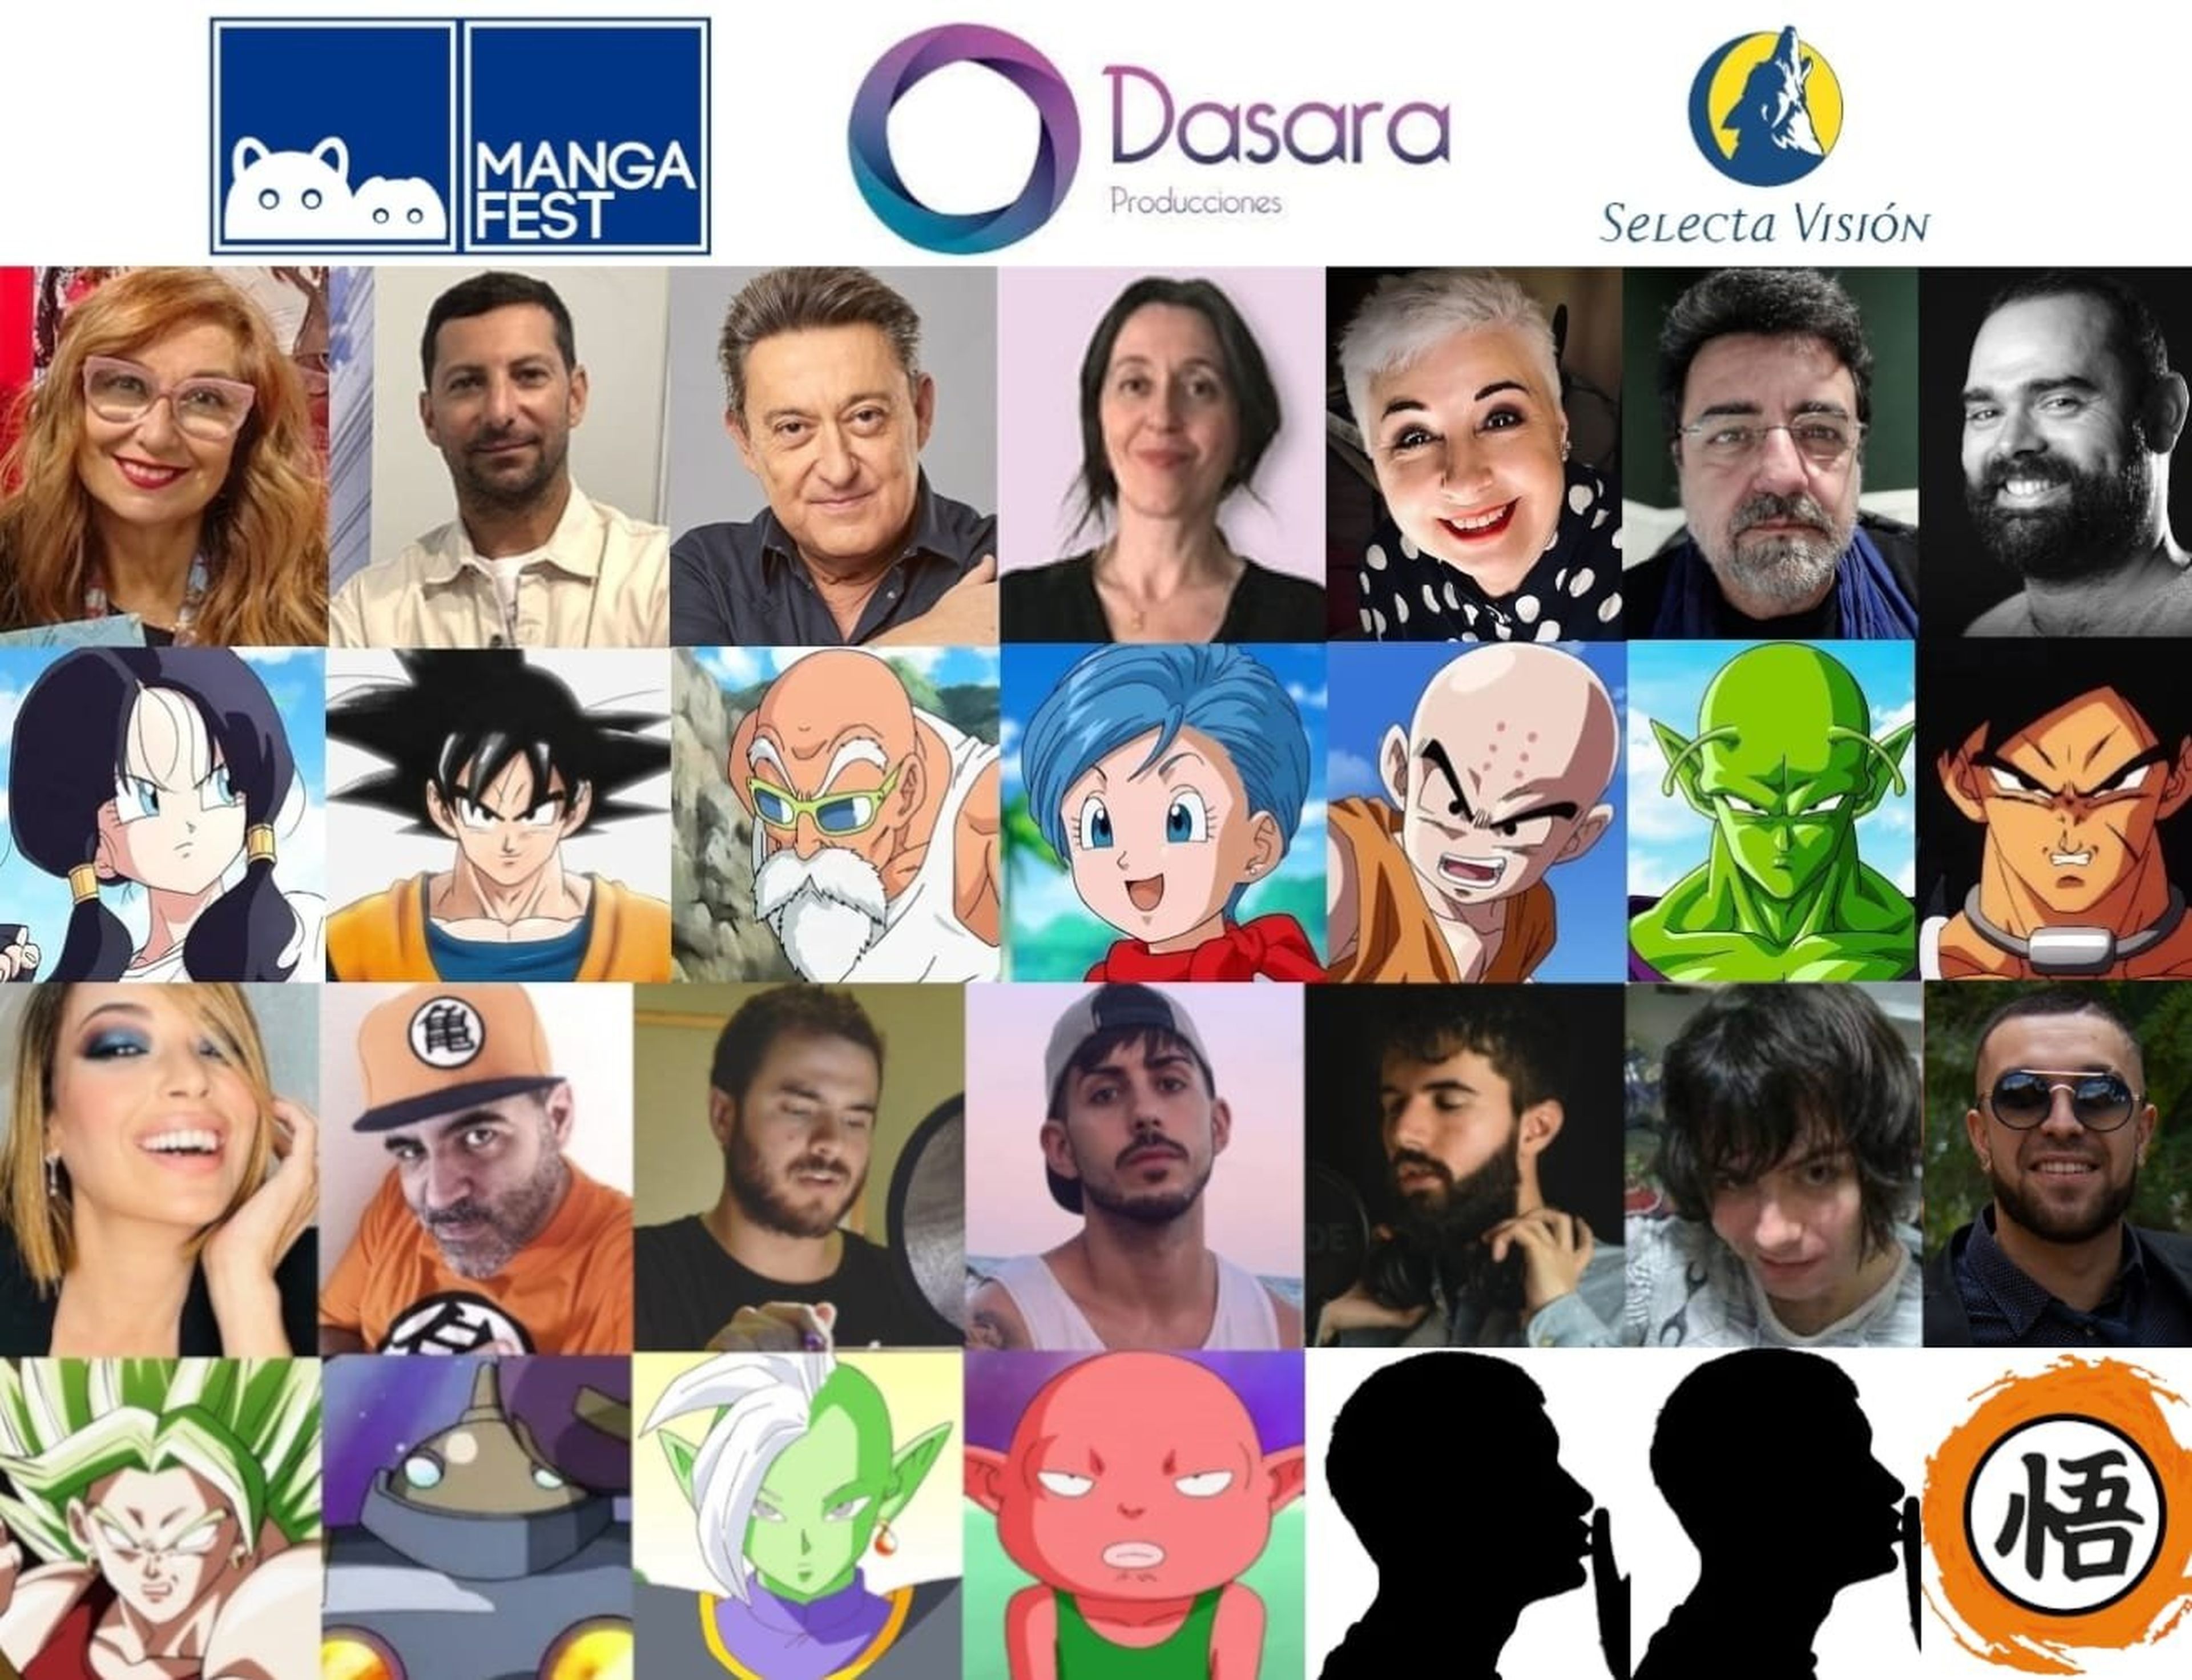 Dragon Ball - Nuevos actores de doblaje en castellano confirmados para el evento especial de Mangafest. ¿Doblarán la nueva película de la serie?